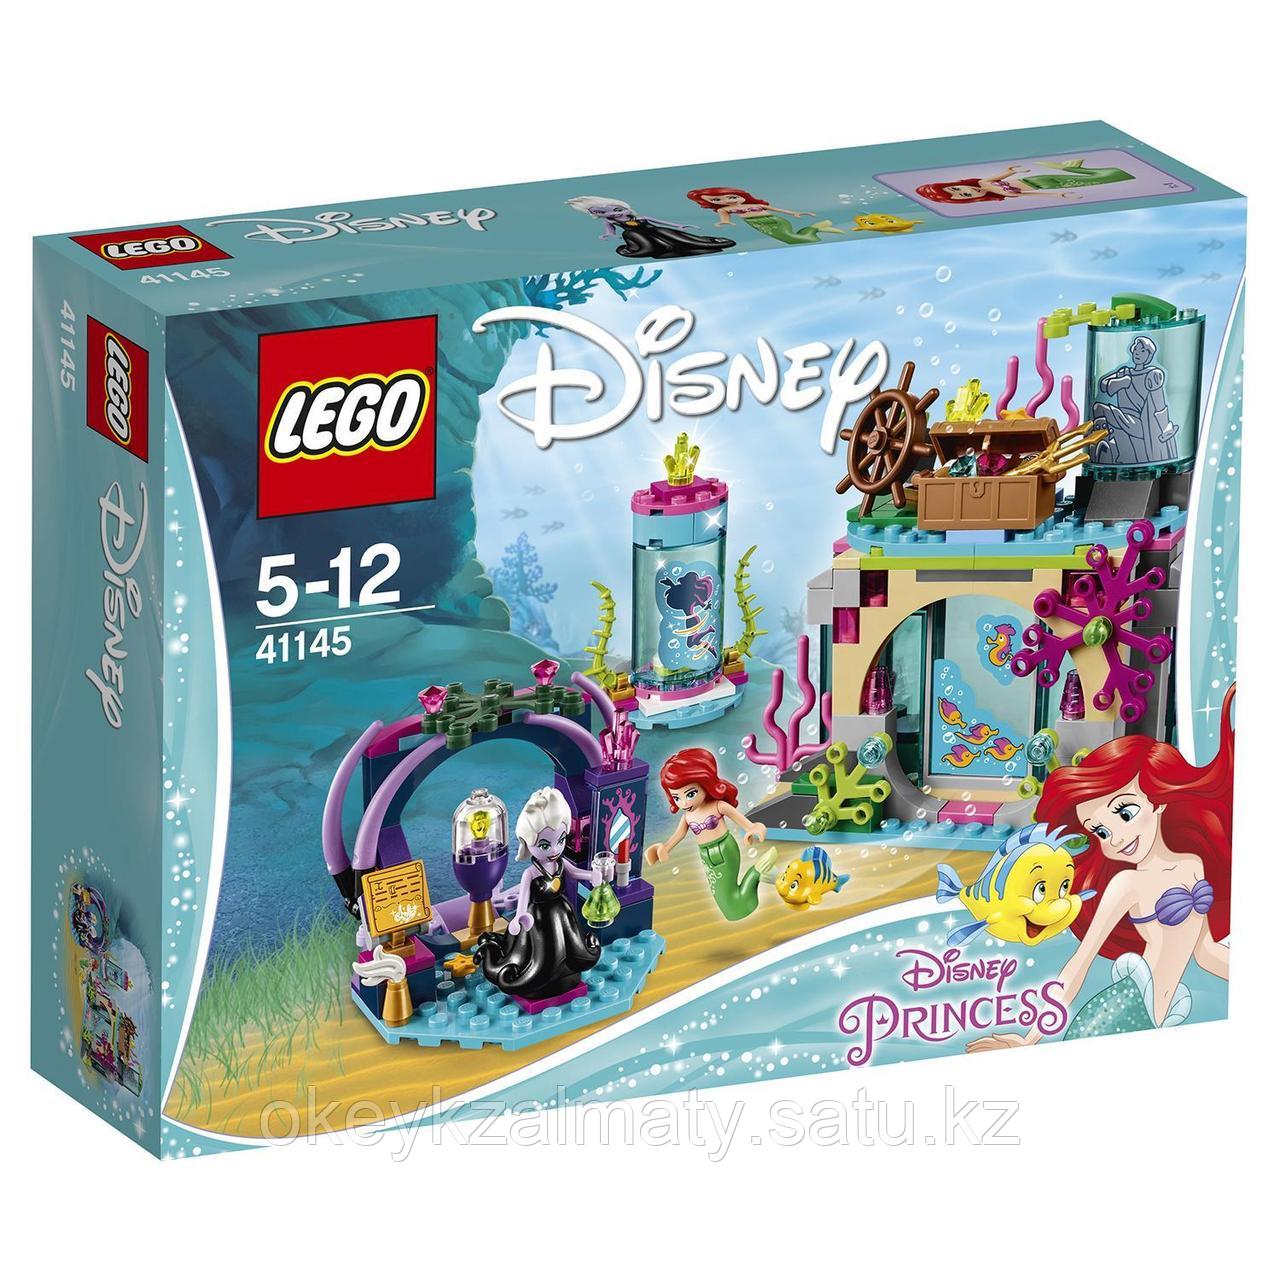 LEGO Disney Princess: Ариэль и магическое заклятье 41145